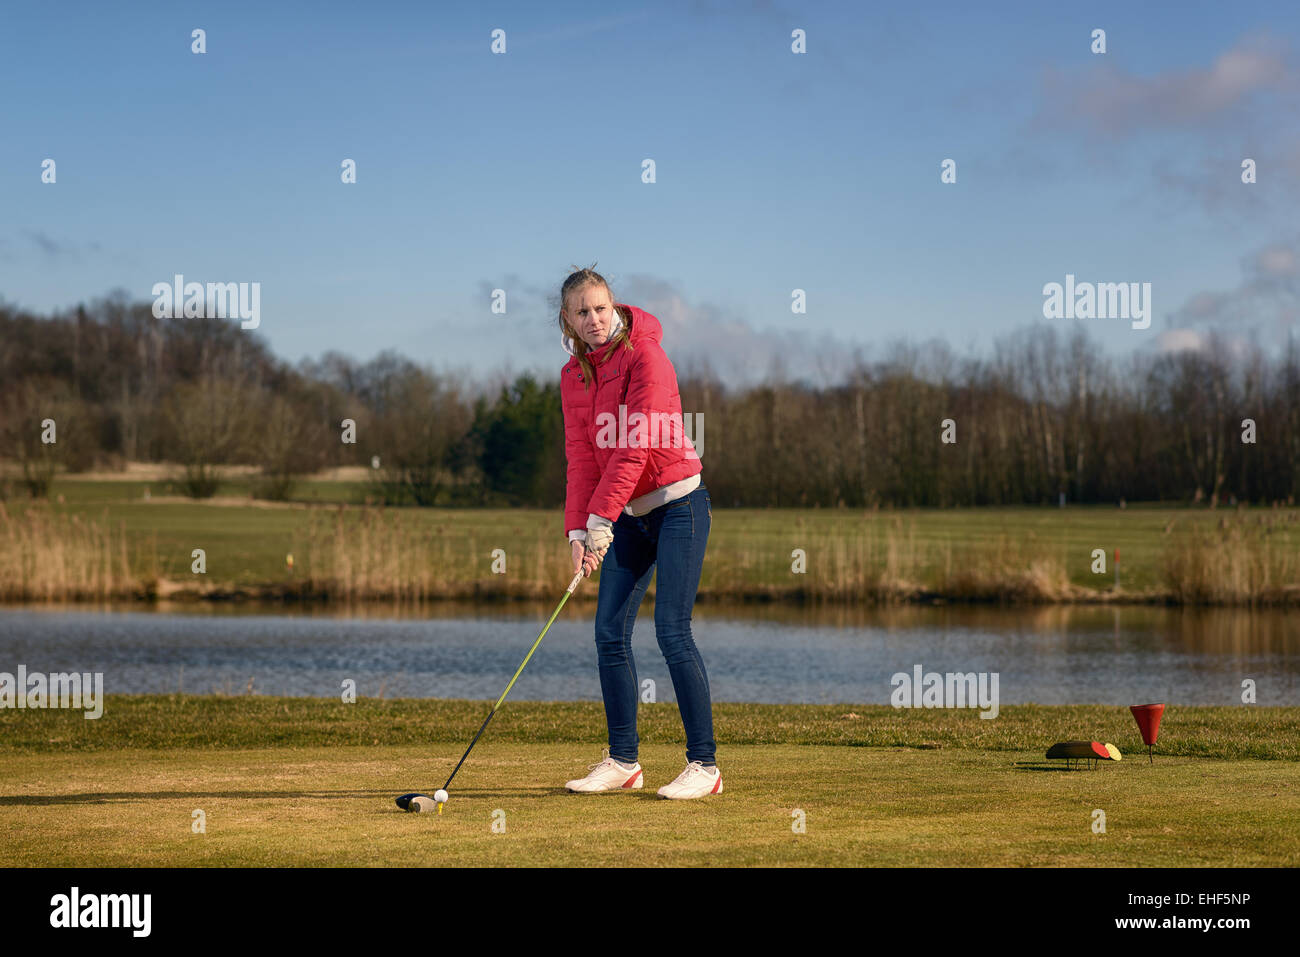 Donna di rinvio su un campo da golf in piedi nella scatola a t di fronte a un pericolo in acqua con un autista nelle sue mani pronto a tee-off Foto Stock